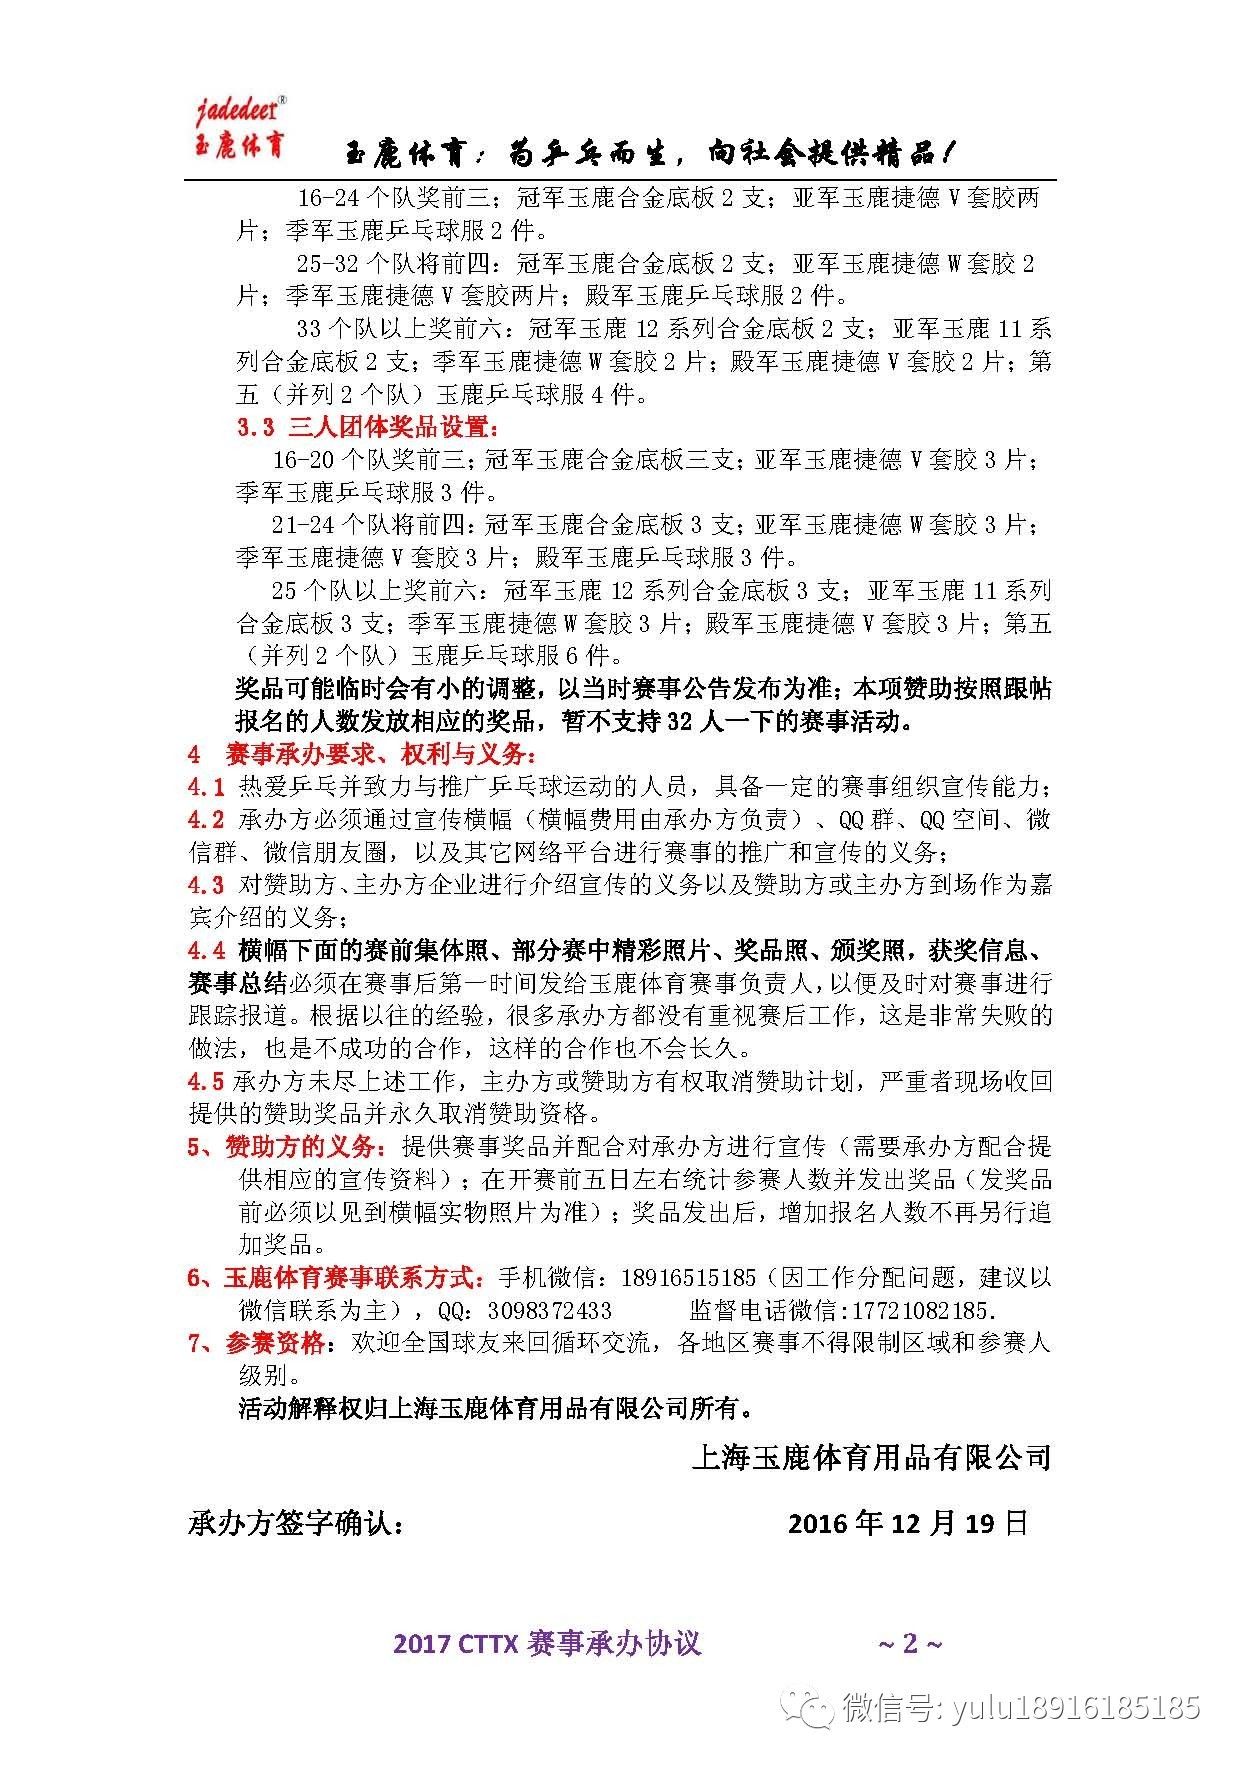 2017年玉鹿体育乒乓球赛事承办说明-搜狐体育